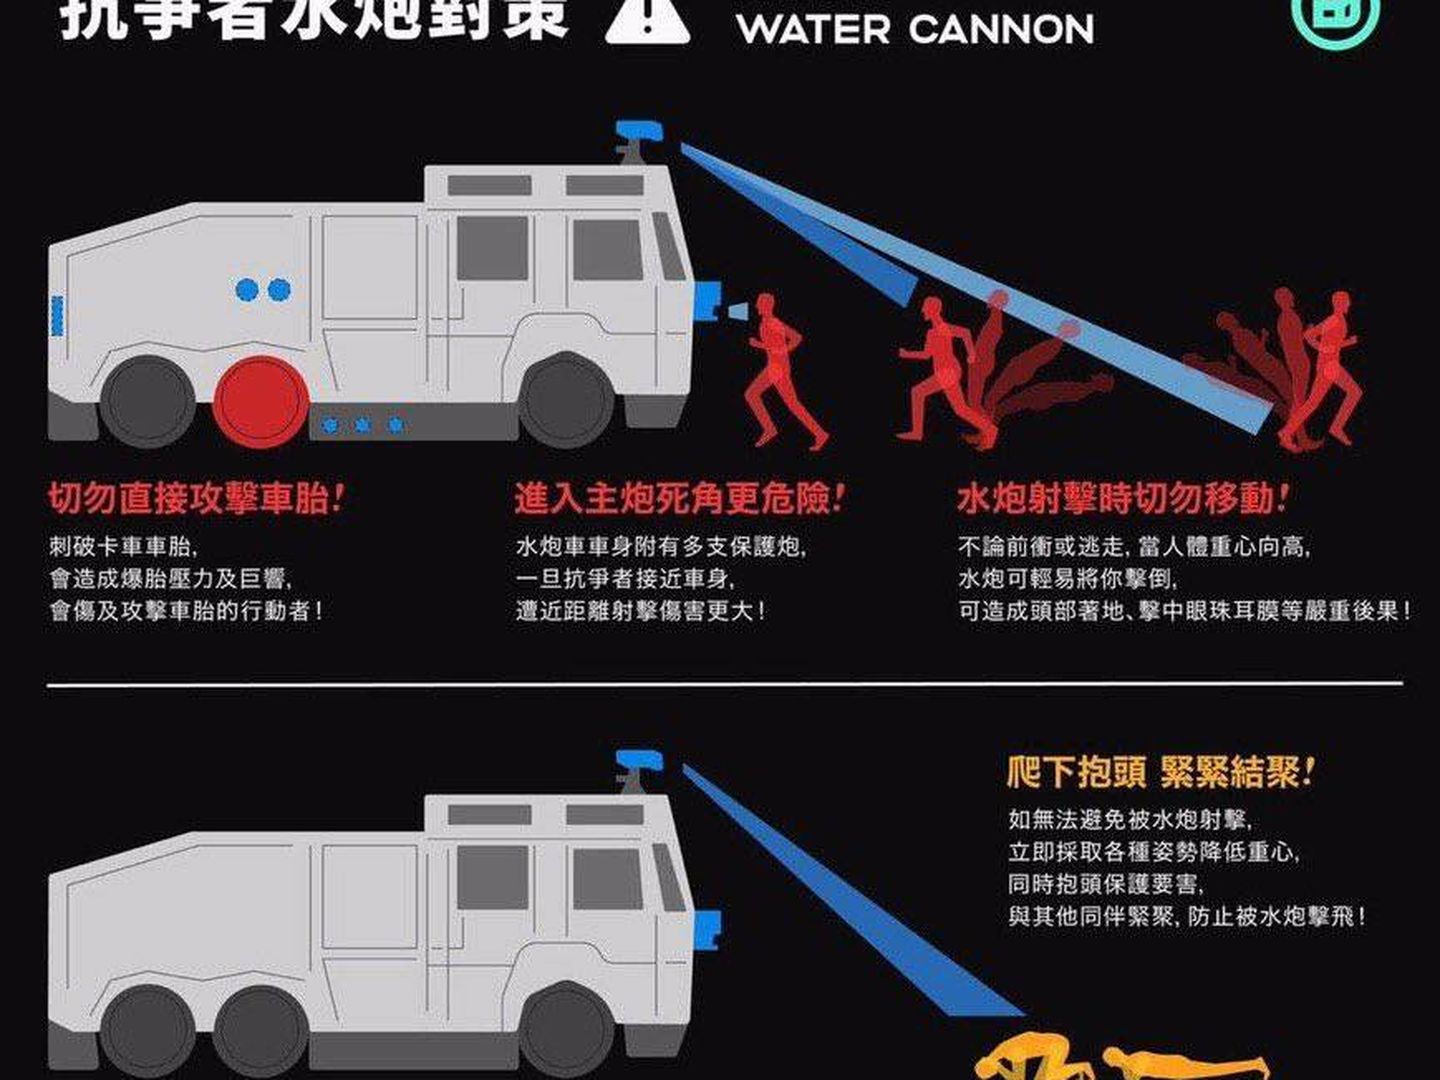 Consejos para enfrentarse a un cañón de agua, en una infografía compartida en Hong Kong